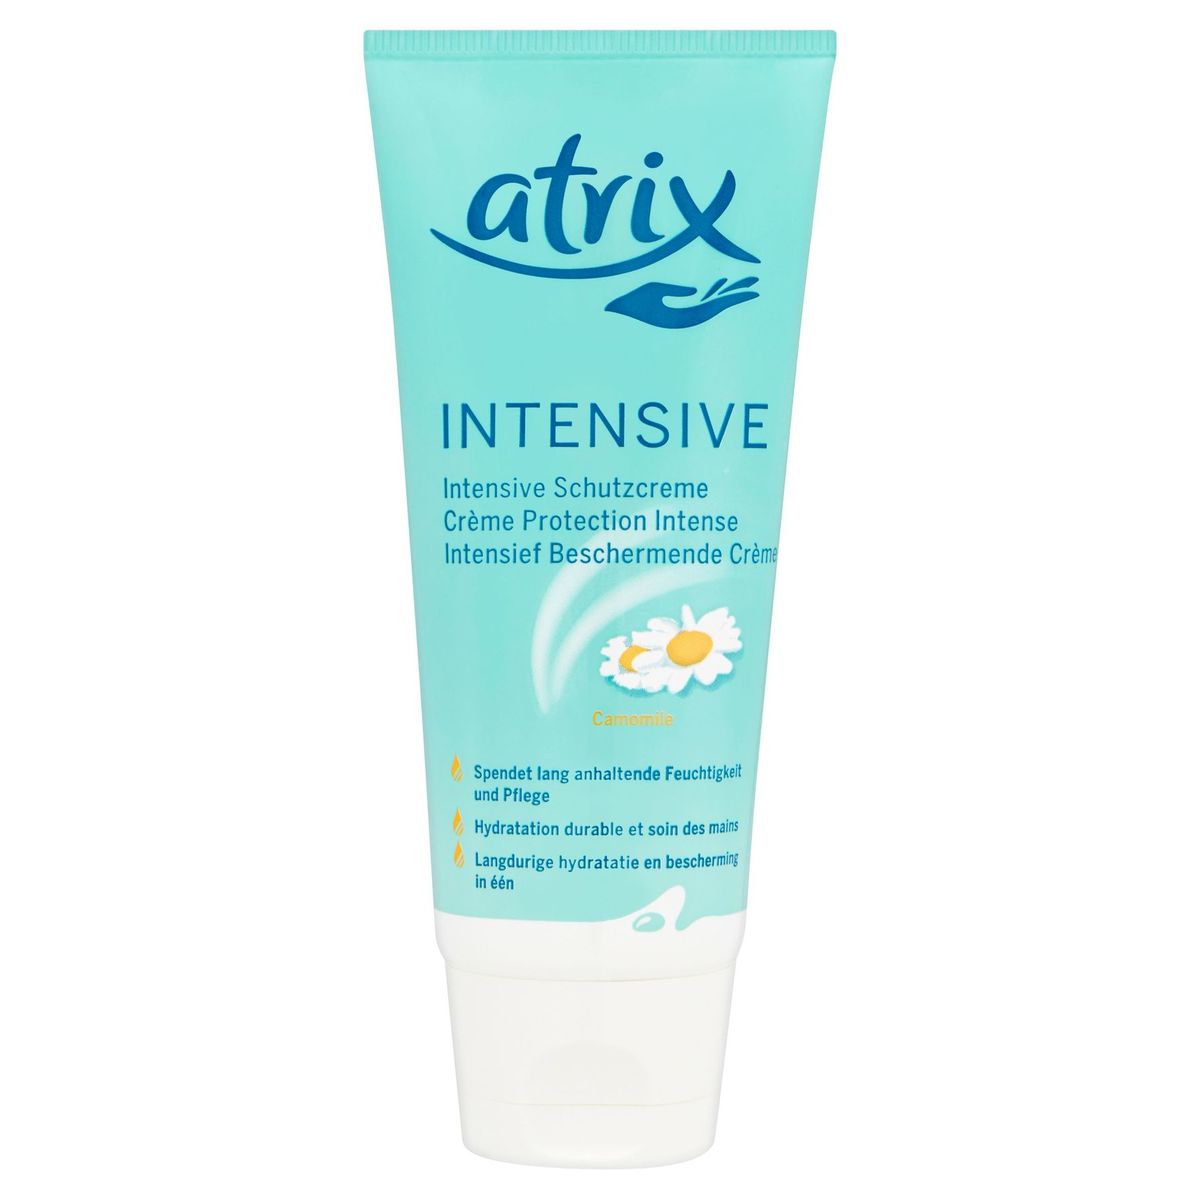 Atrix Intensive Crème Protection Intense Camomile 100 ml